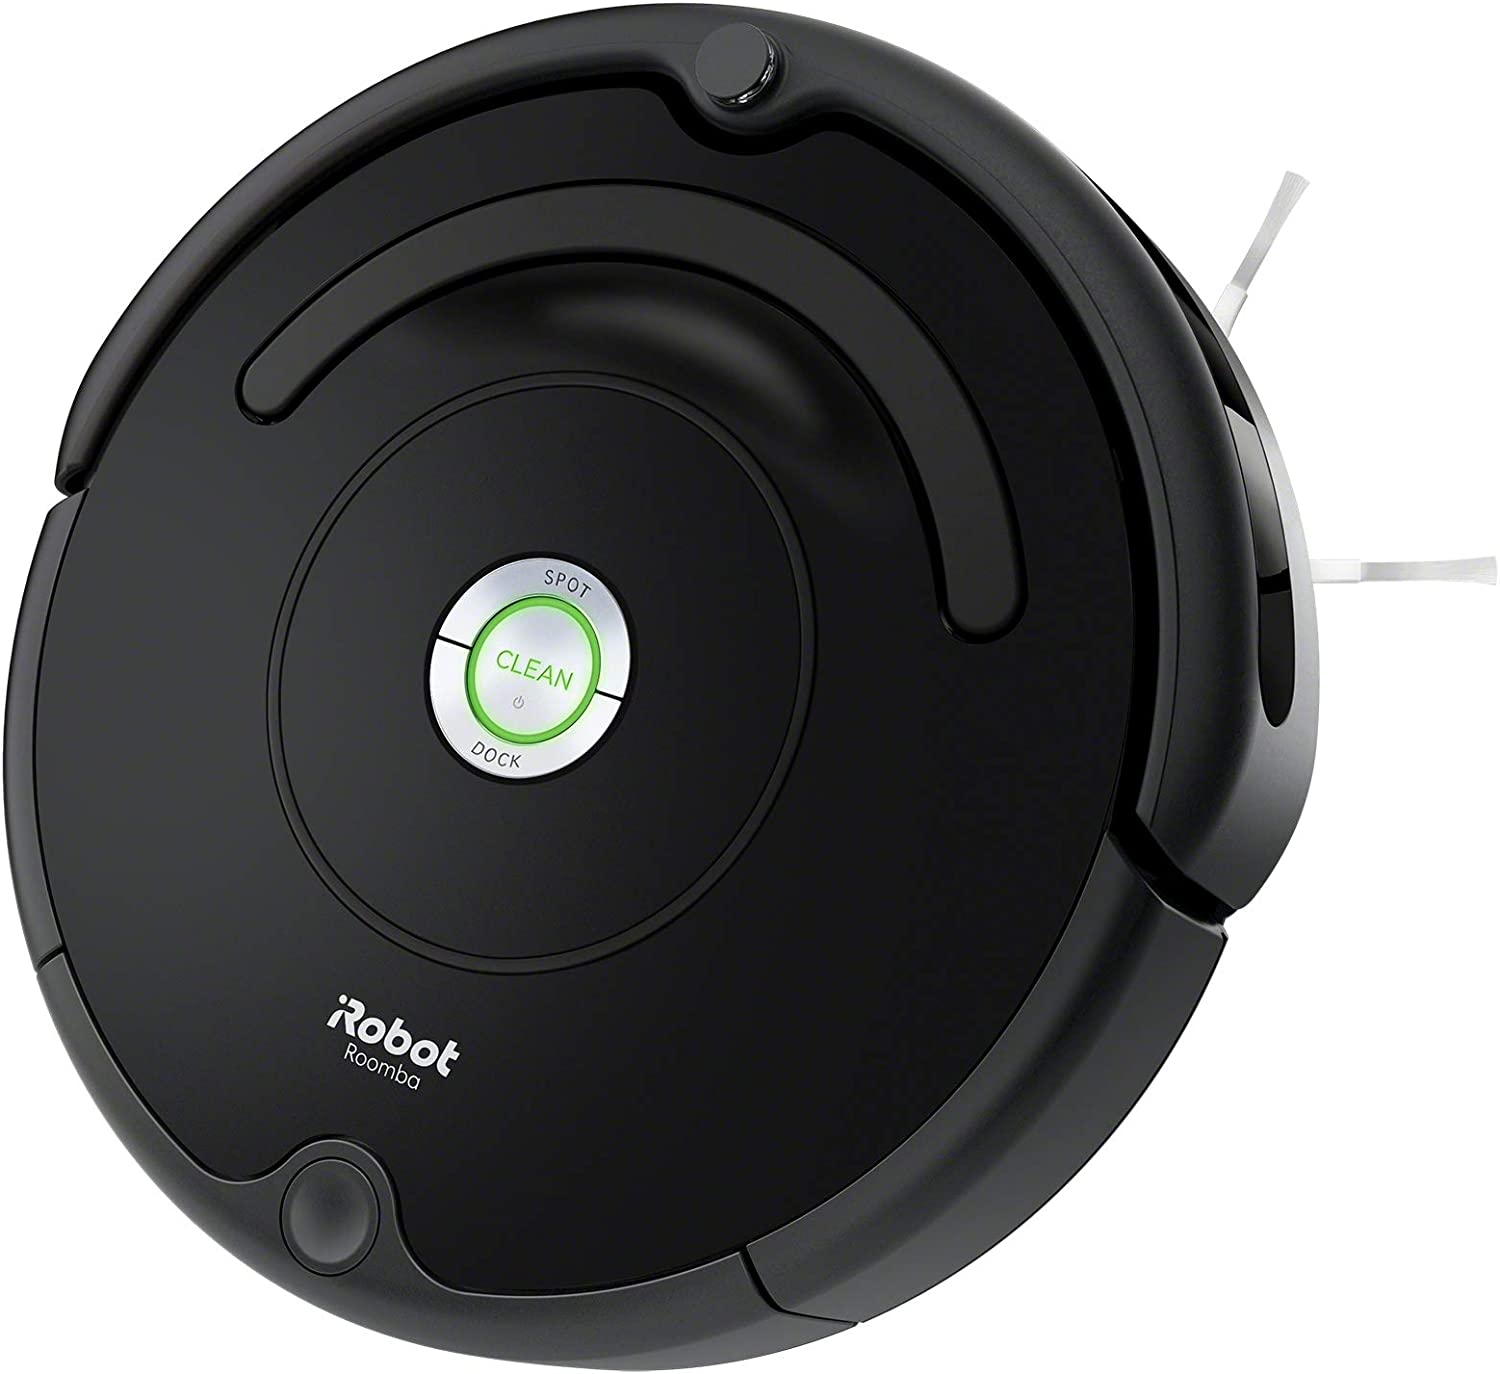 Roomba 675 Aspiradora con conexión Wi-Fi - Librería Libros Cristianos - Aspiradora